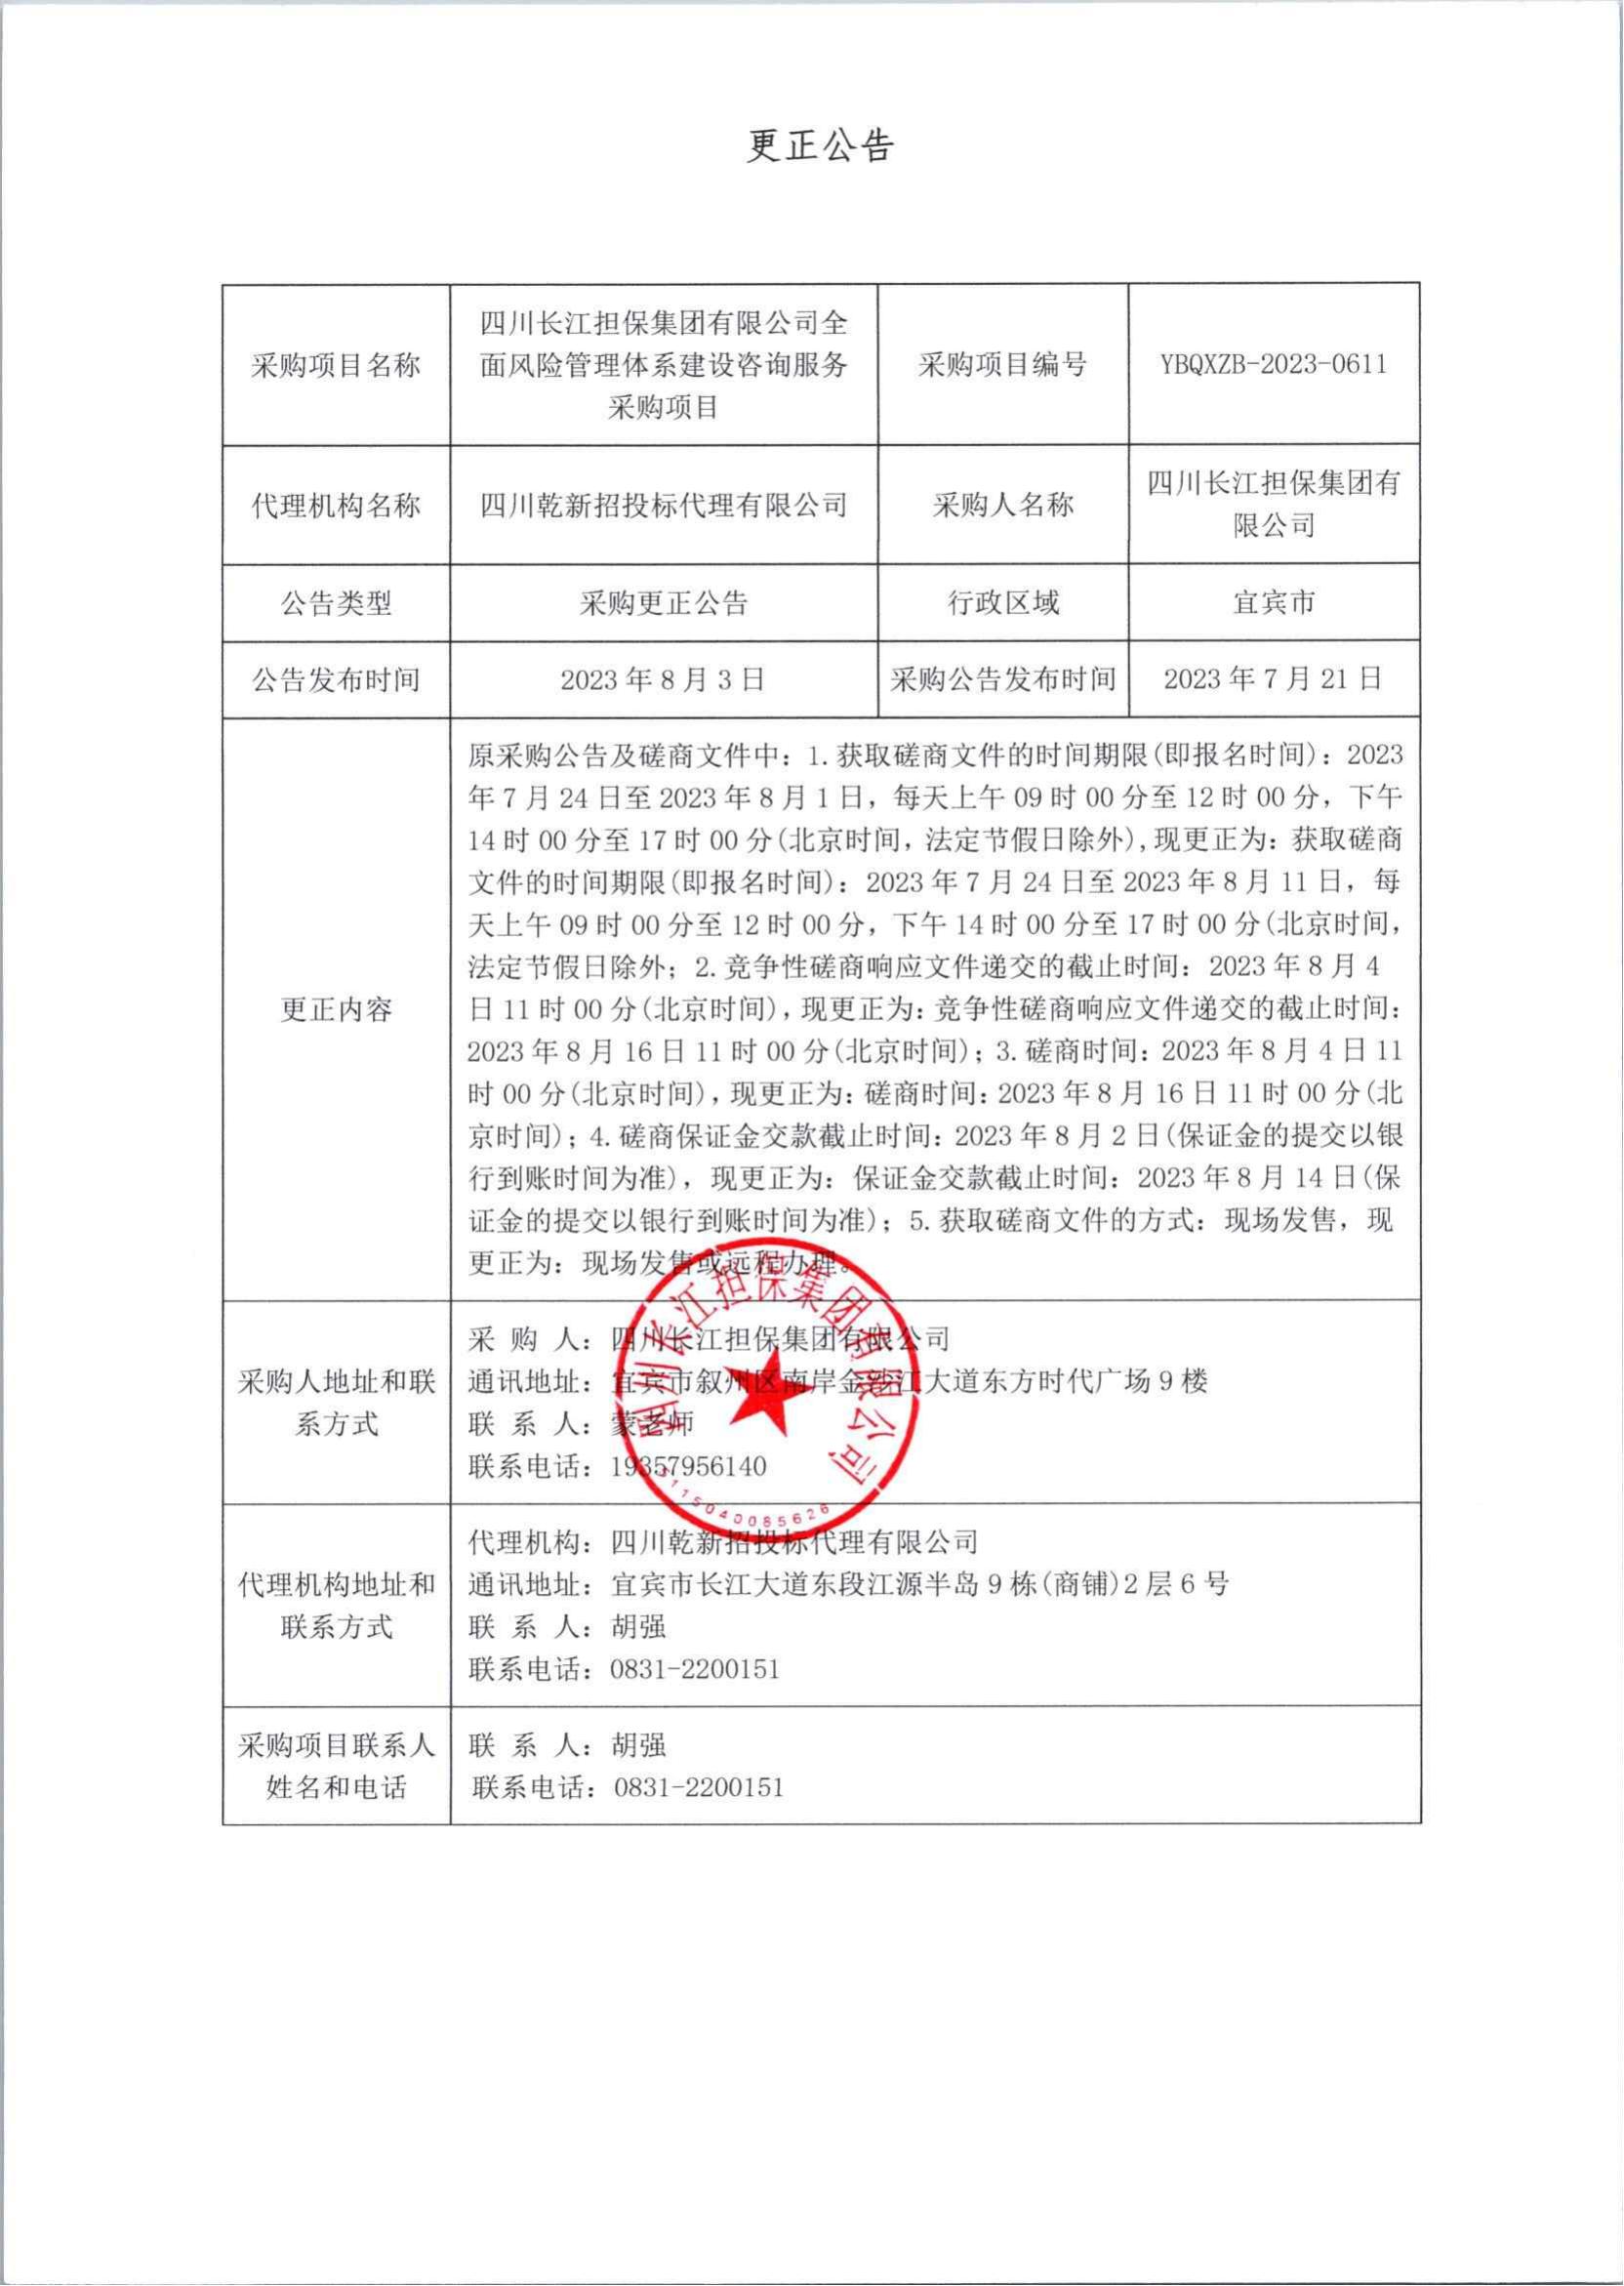 四川长江担保集团有限公司 全面风险管理体系建设咨询服务采购更正公告(图1)